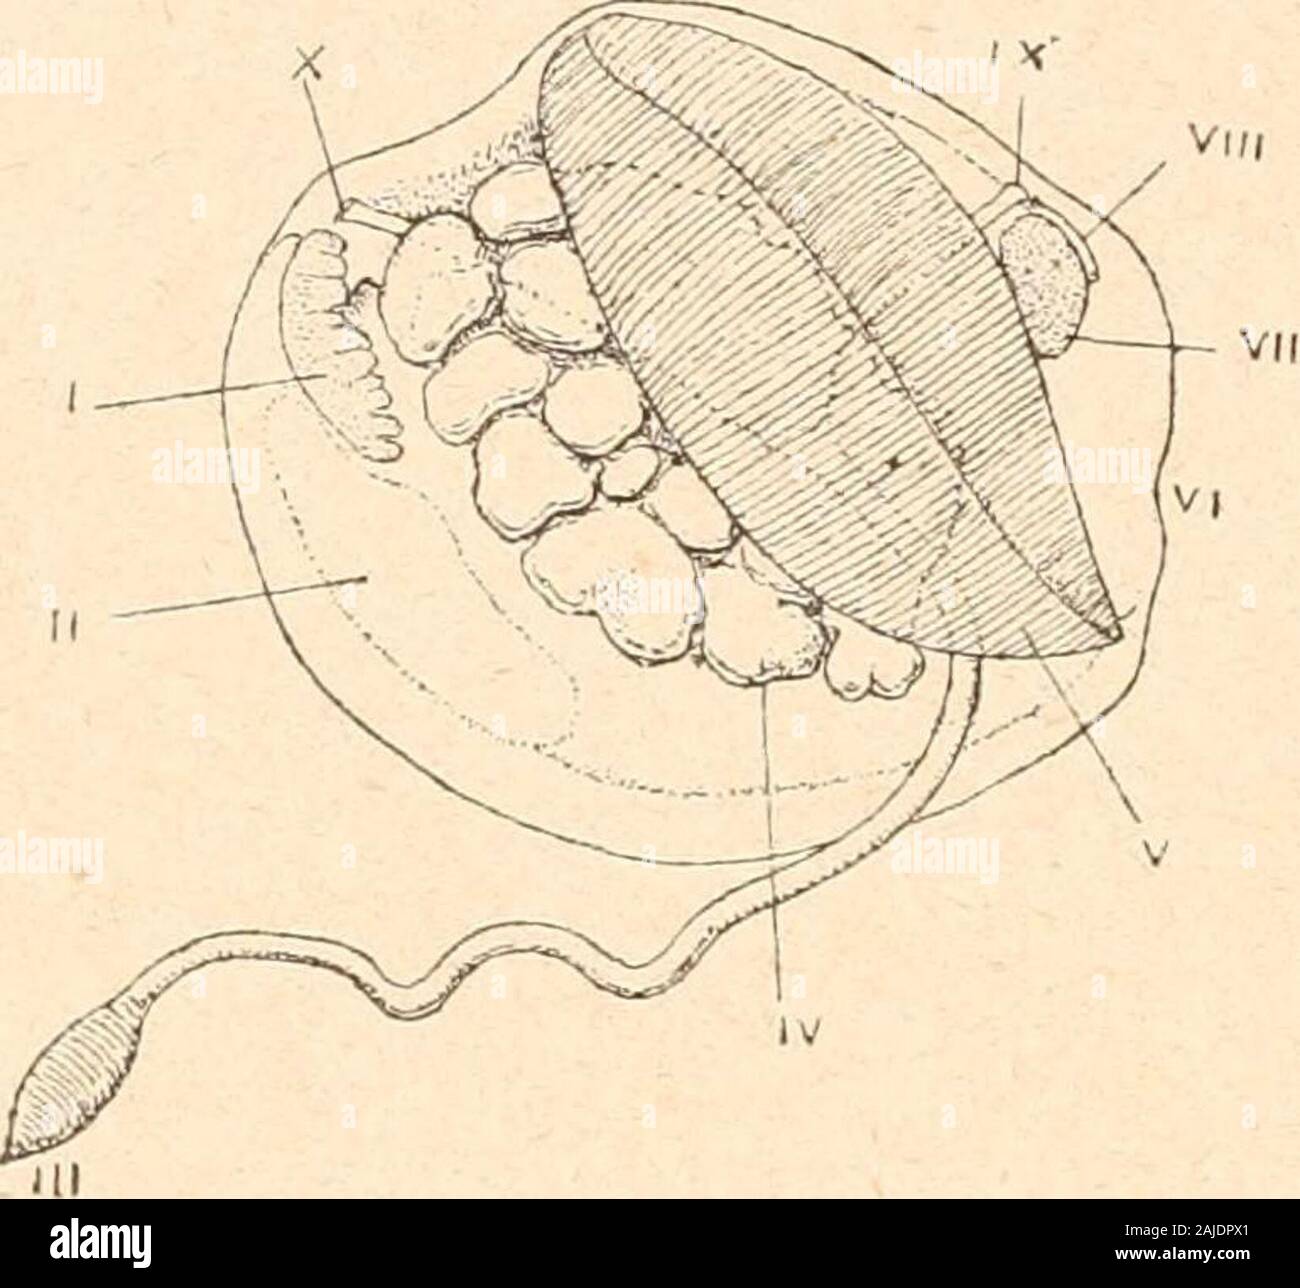 Introduction à l'étude des mollusques . éales ; généralement deux muscles adducteurs; les branchies ontdes jonctions interfilamentaires et interfoliaires, toutes vasculaires, lesdernières formant, dans lintérieur des lames, des conduits afférents ;les glandes génitales ont des orifices extérieurs propres. Cet ordre renferme les sept sous-ordres suivants : Suhmytilacea,Tellinacea, Veneracea, Cardiacea, Myacea, Pholadacea, Ana-tinacea. — 166 — Sous-oidre : Submytilacea. Manteau généralement bien ouvert, ordinairement à une seulesuture, et sans siphons [sâu^ Dreisseiisia). Famille Cap.ditu)^. Une Stock Photo